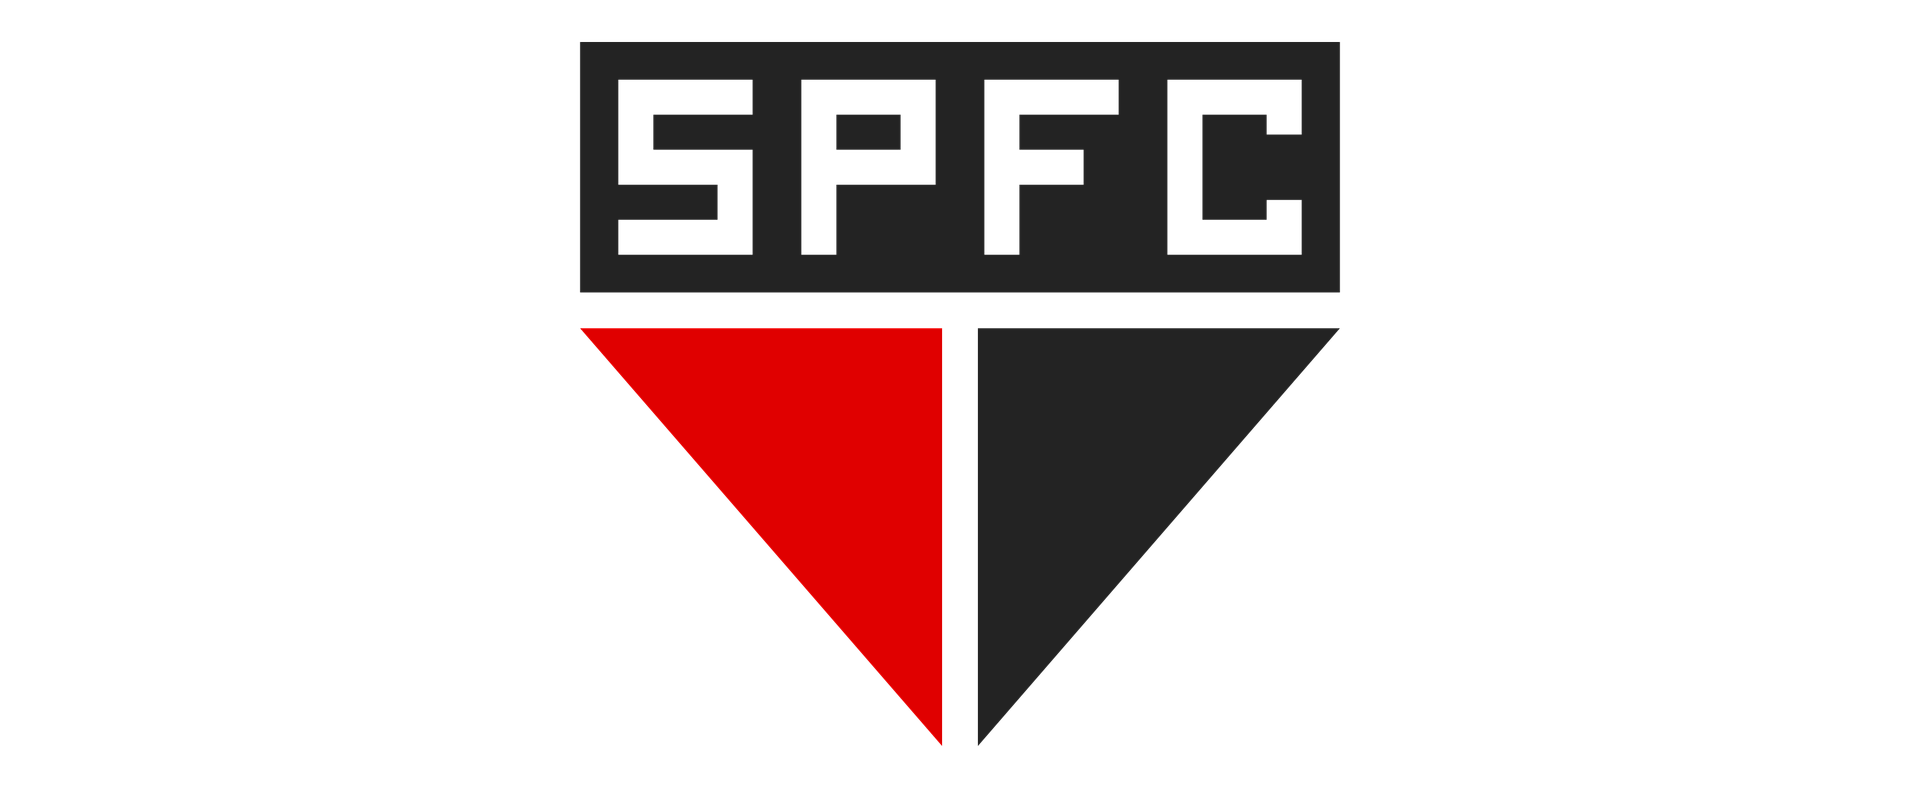 O São Paulo é um dos maiores clubes de futebol do Brasil. Veja se vale a pena apostar no São Paulo no Brasileirão 2022.